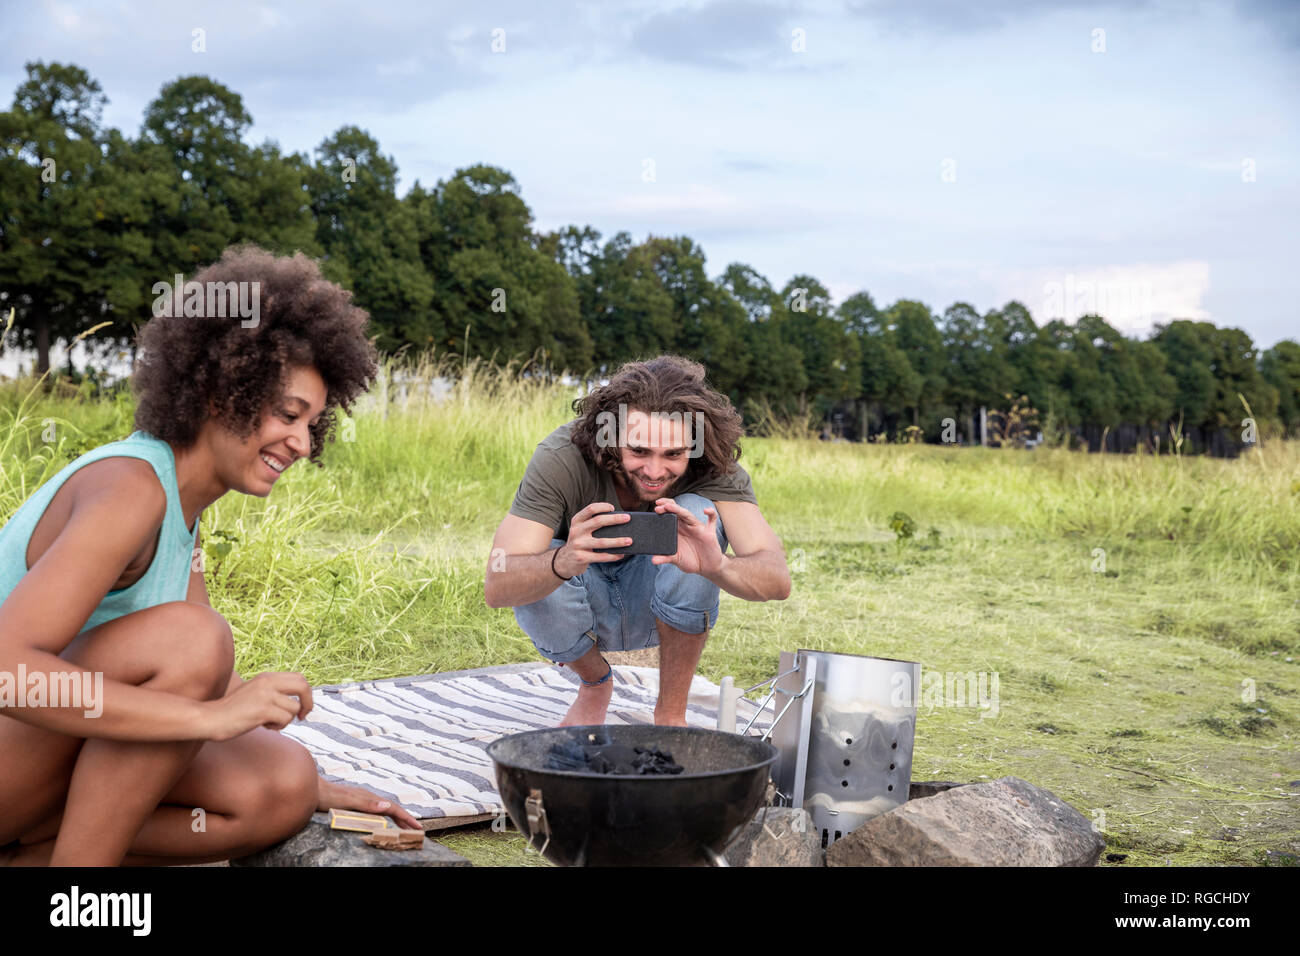 Smiling Young man with girlfriend de prendre une photo de barbecue dans la nature Banque D'Images